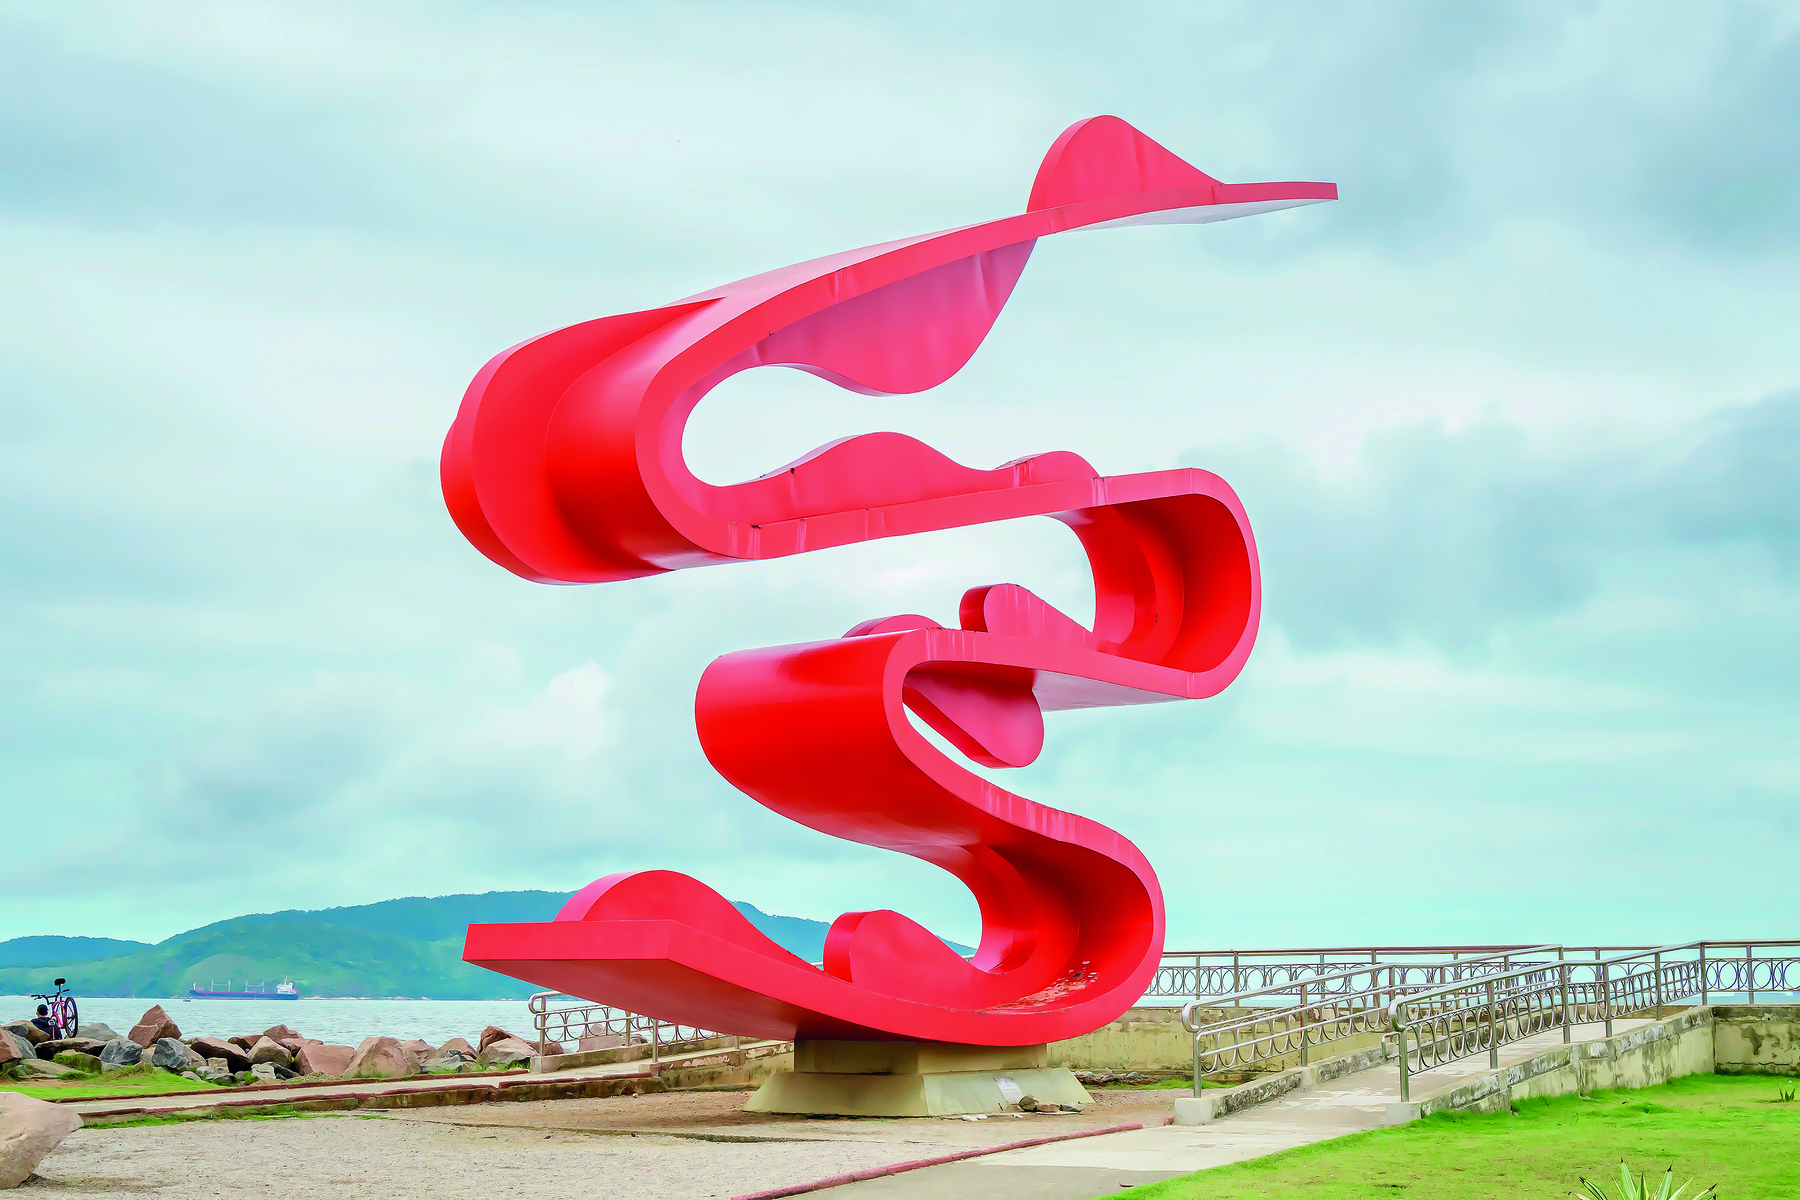 Fotografia. Destaque para escultura ao ar livre, com estruturas curvas, contínuas e assimétricas, na cor vermelha.